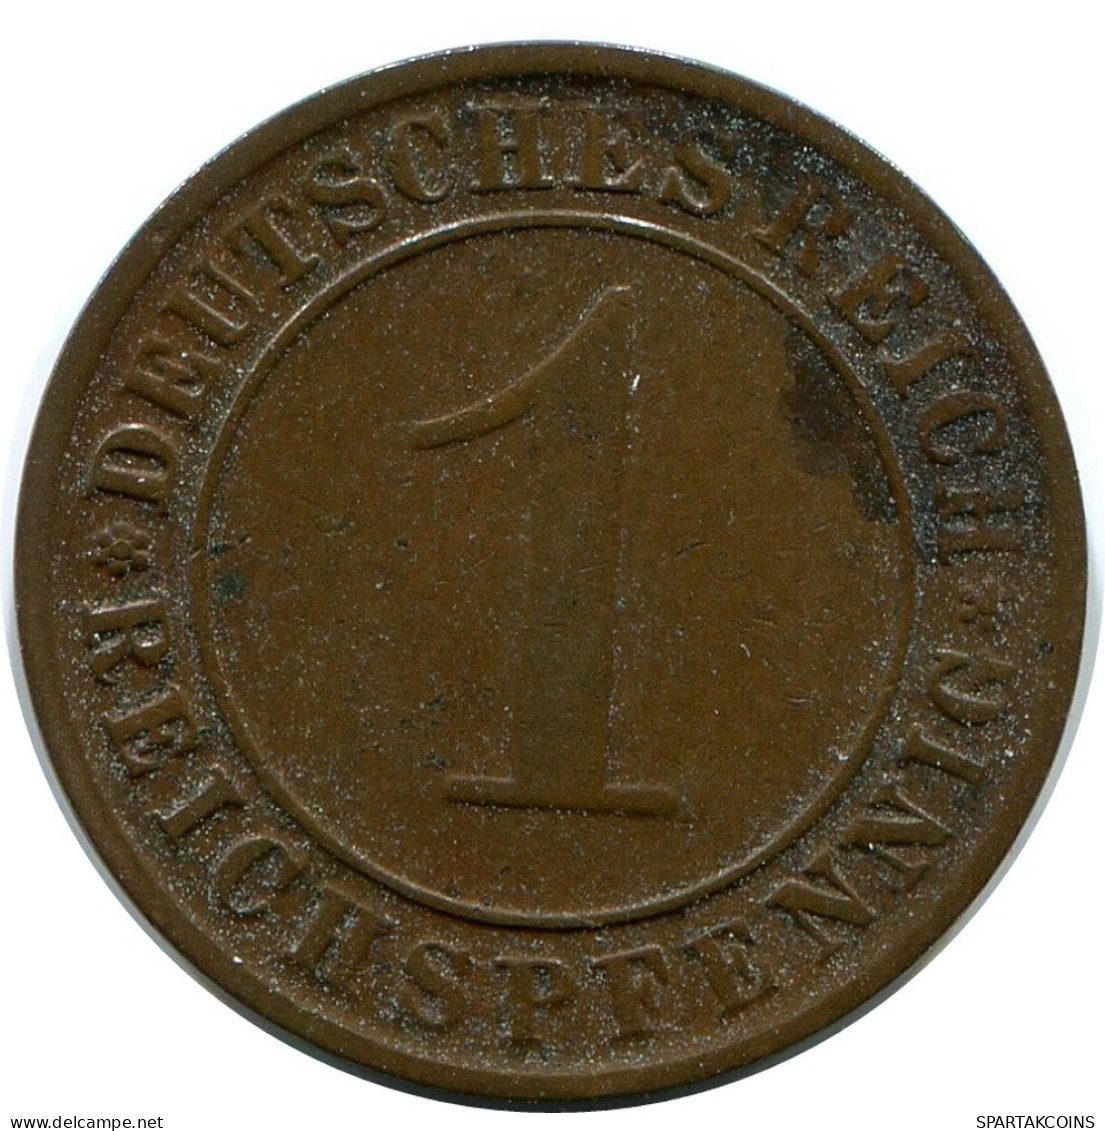 1 REICHSPFENNIG 1933 A GERMANY Coin #DB793.U.A - 1 Reichspfennig